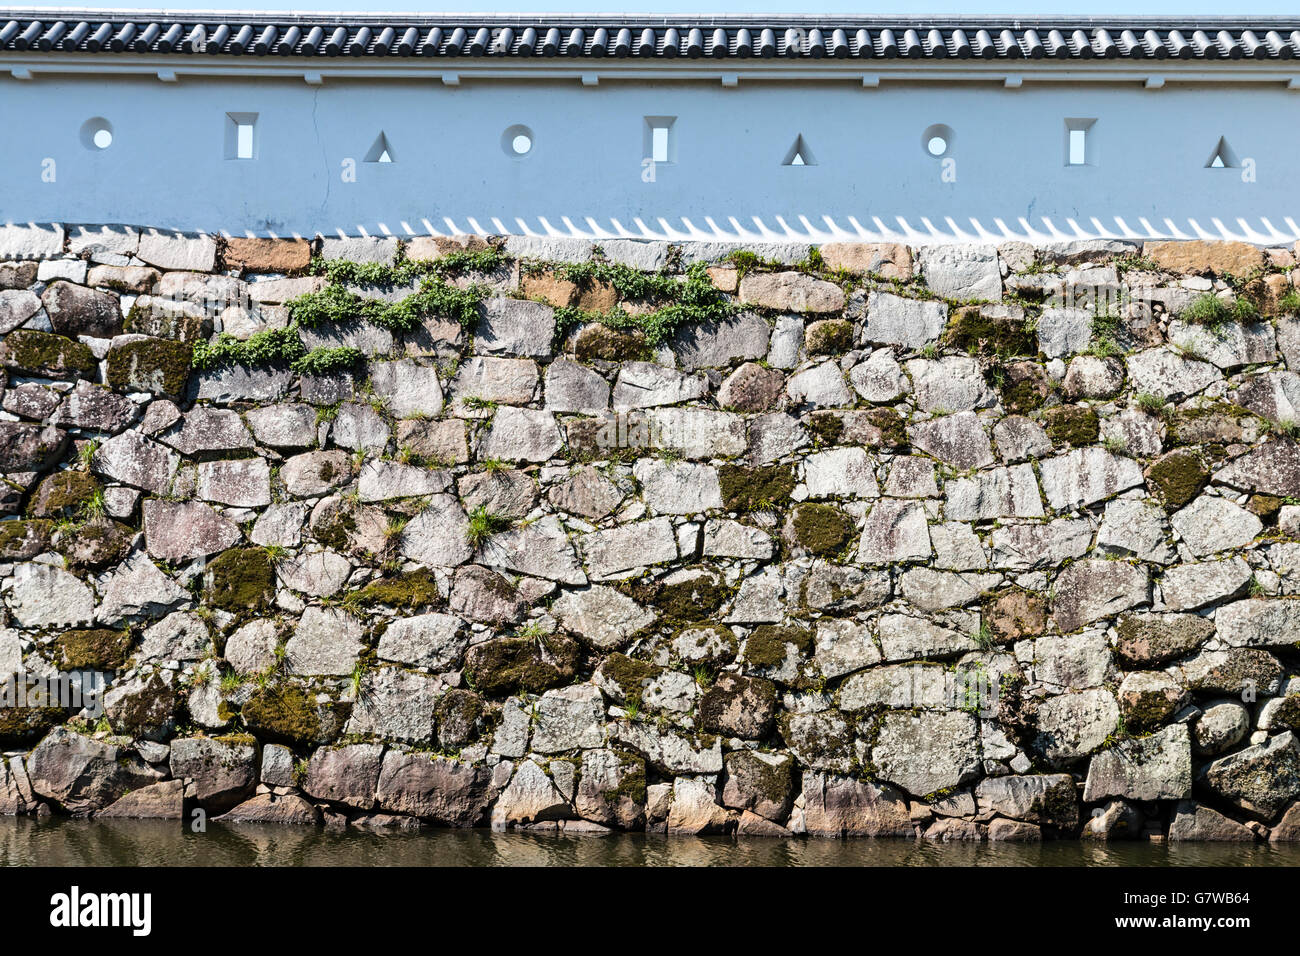 Giappone, Ako castello. Pareti Dobei sulla sommità di Isola di Ishigaki, mura di pietra con fori di tiro, sama. Triangolari e quadrate per pistole, oblunga per archi. Foto Stock